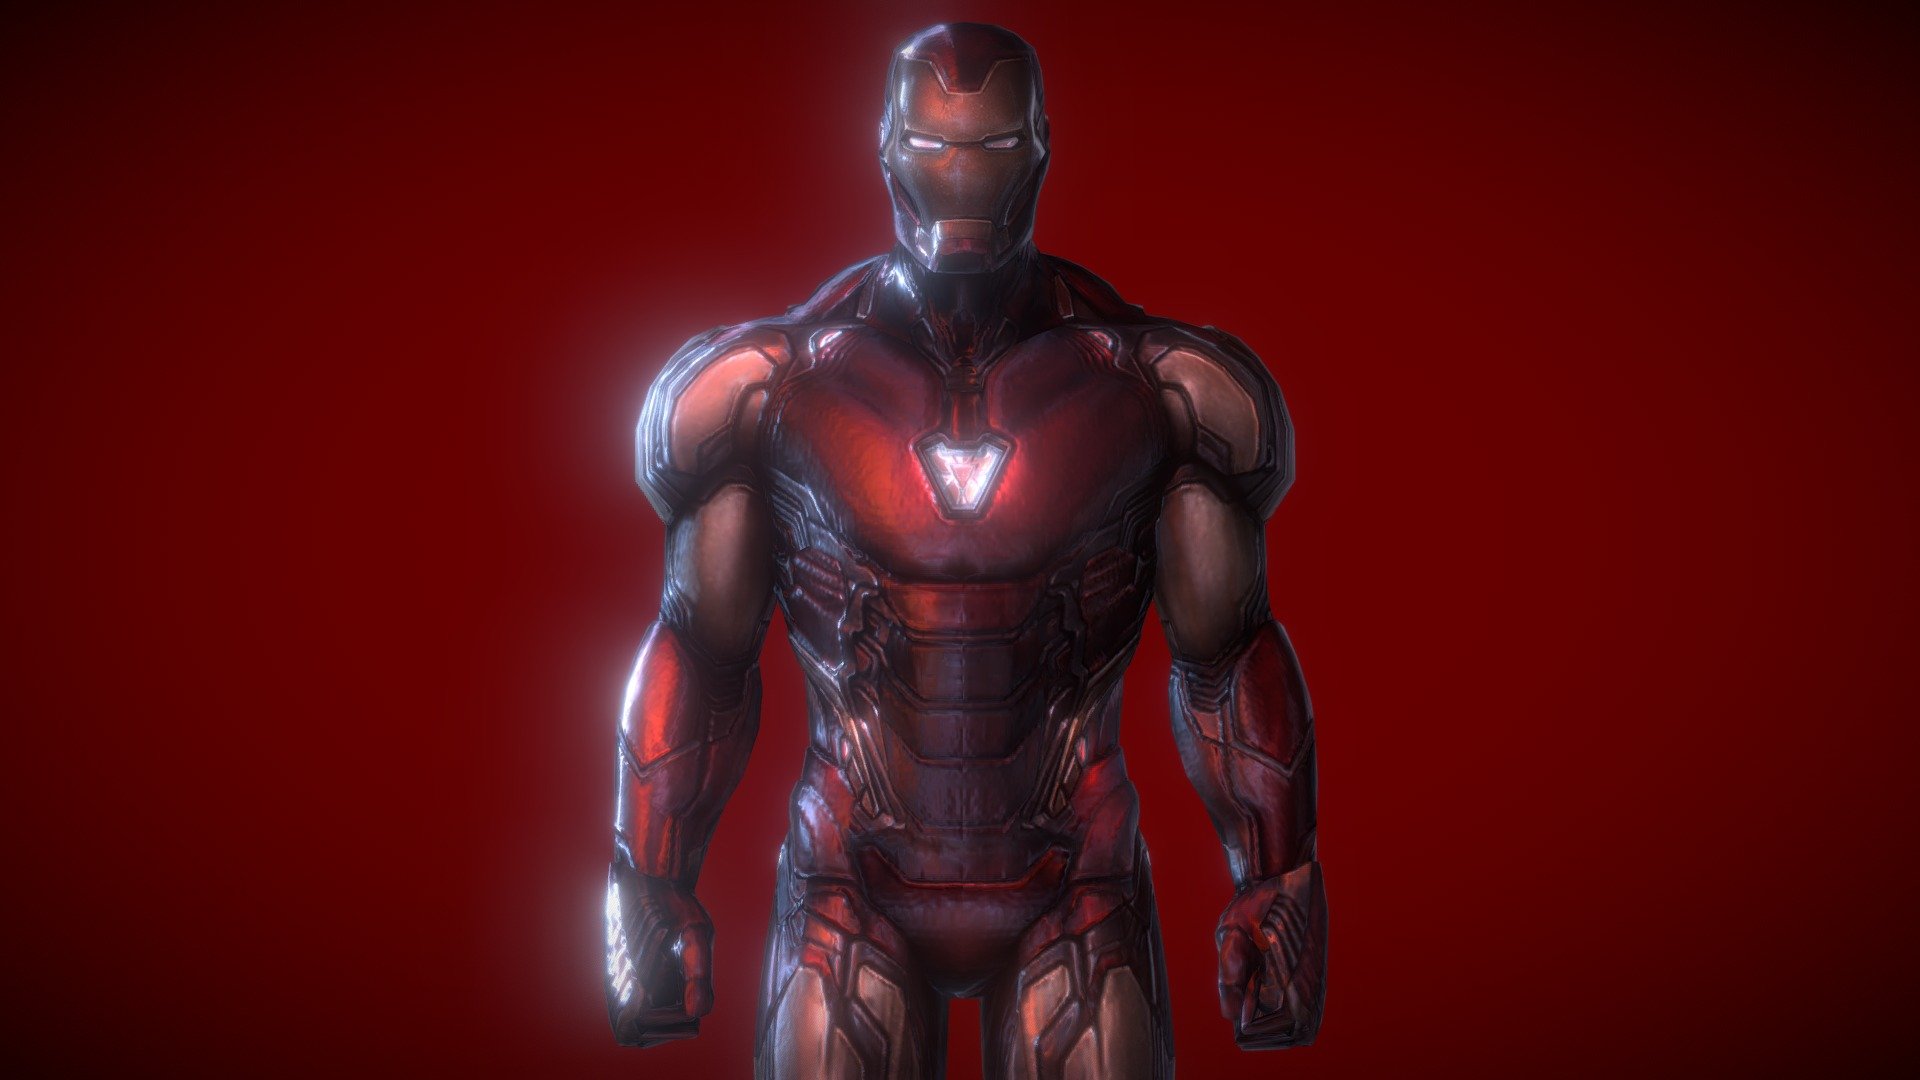 Iron-Man: Endgame